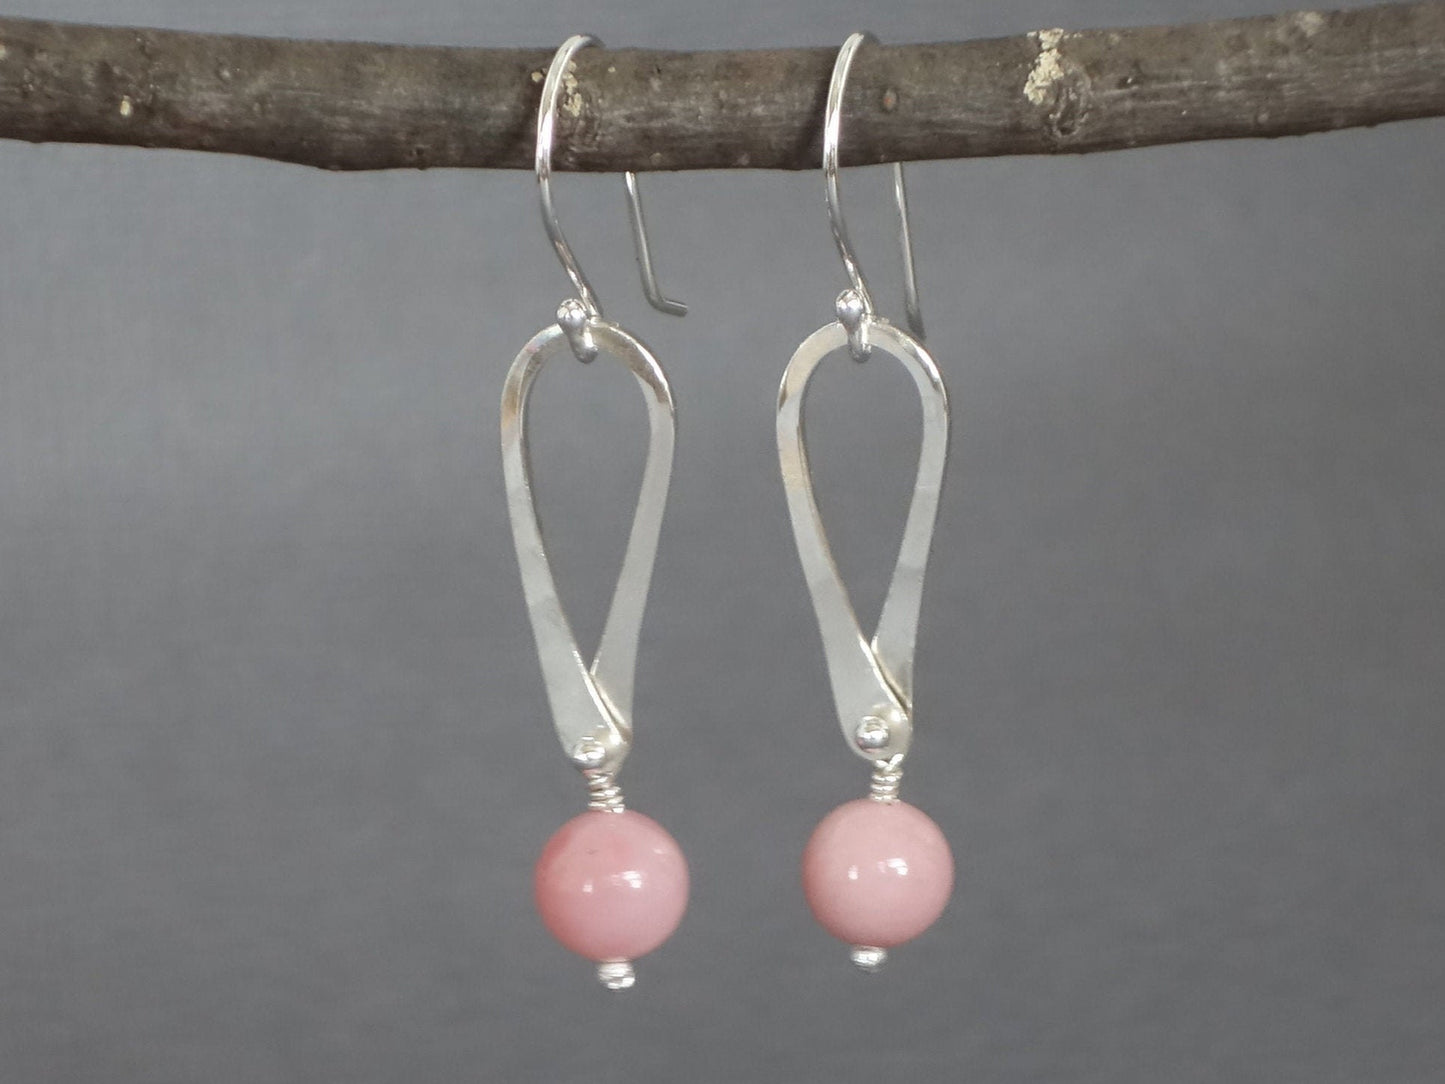 Opal Earrings, Pink Opal Earrings, Pink Earrings, Teardrop Earrings, Opal Dangle Earrings